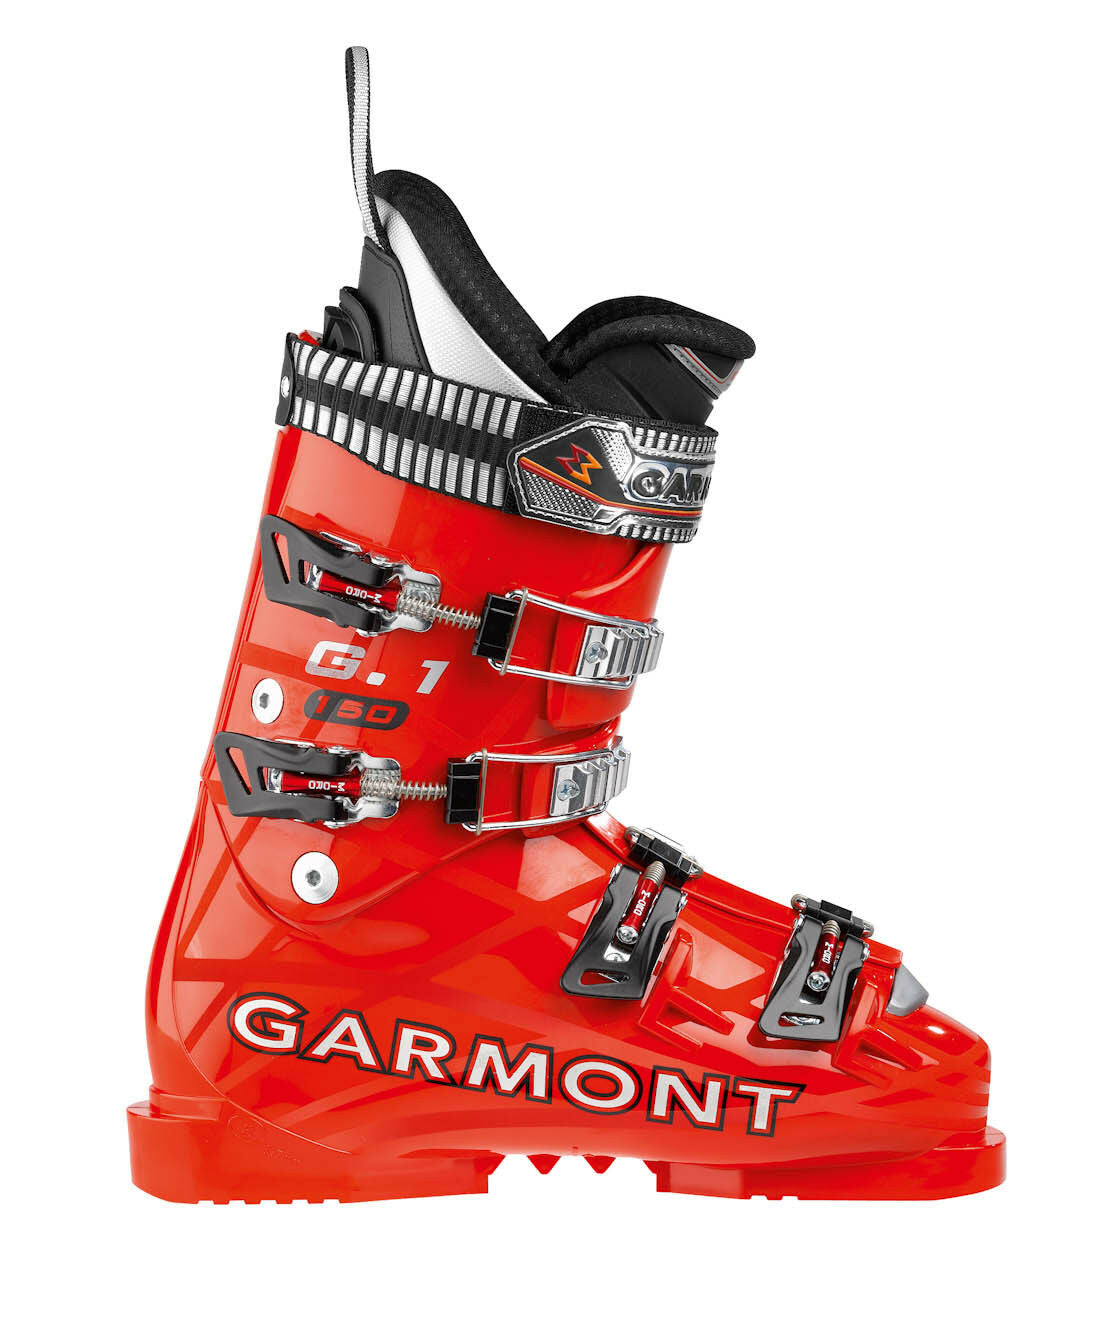 Scarponi da sci da gara Garmont G1 Race150 flex ski boots